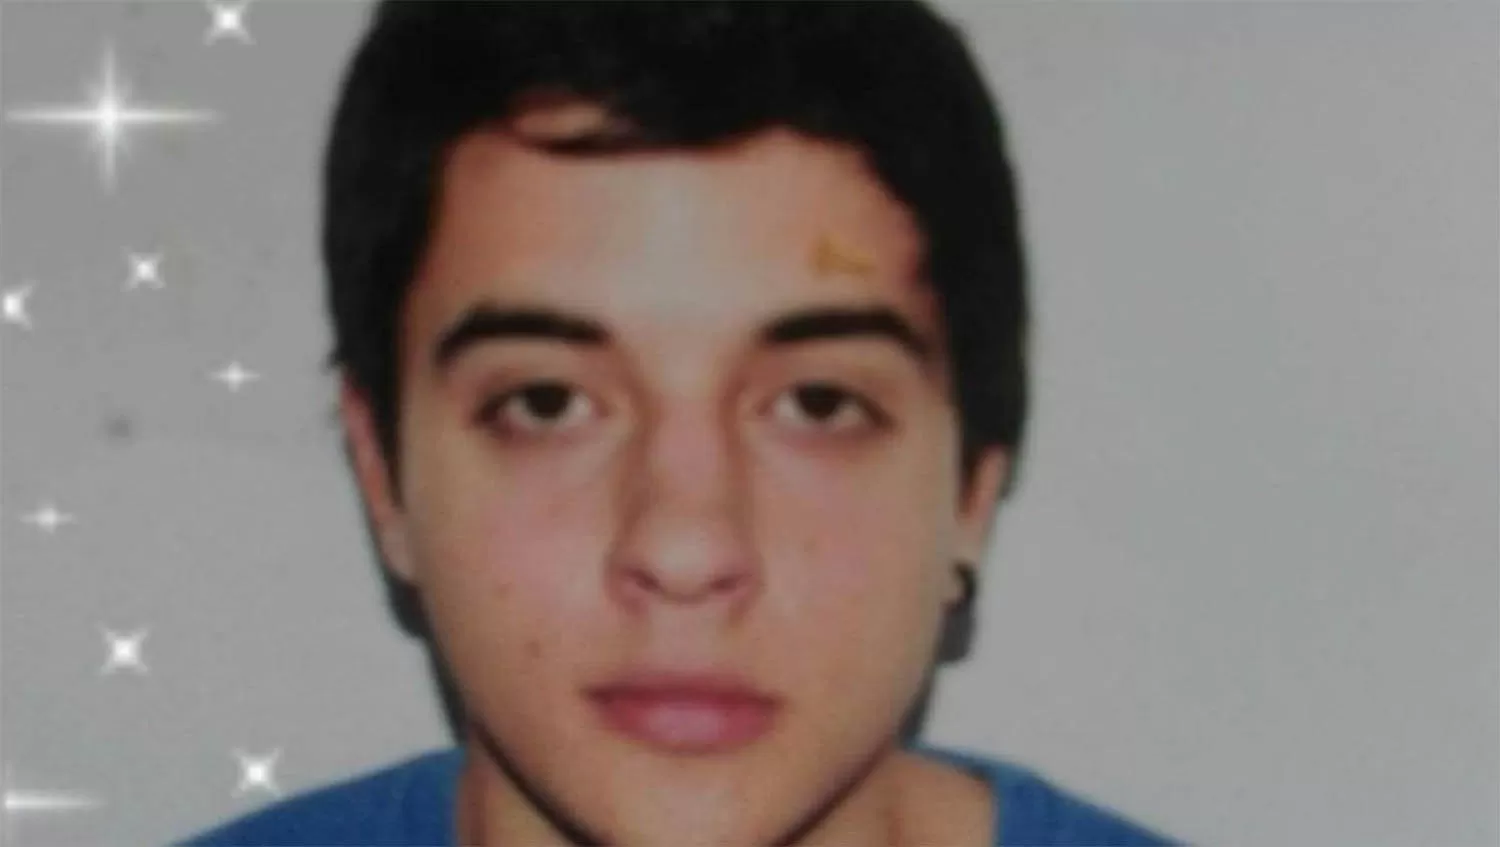 Fernando Pastorizzo tenía 21 años y fue asesinado de dos balazos. Su novia de 19 años confesó el crimen. FOTO TOMADA DE CLARÍN.

